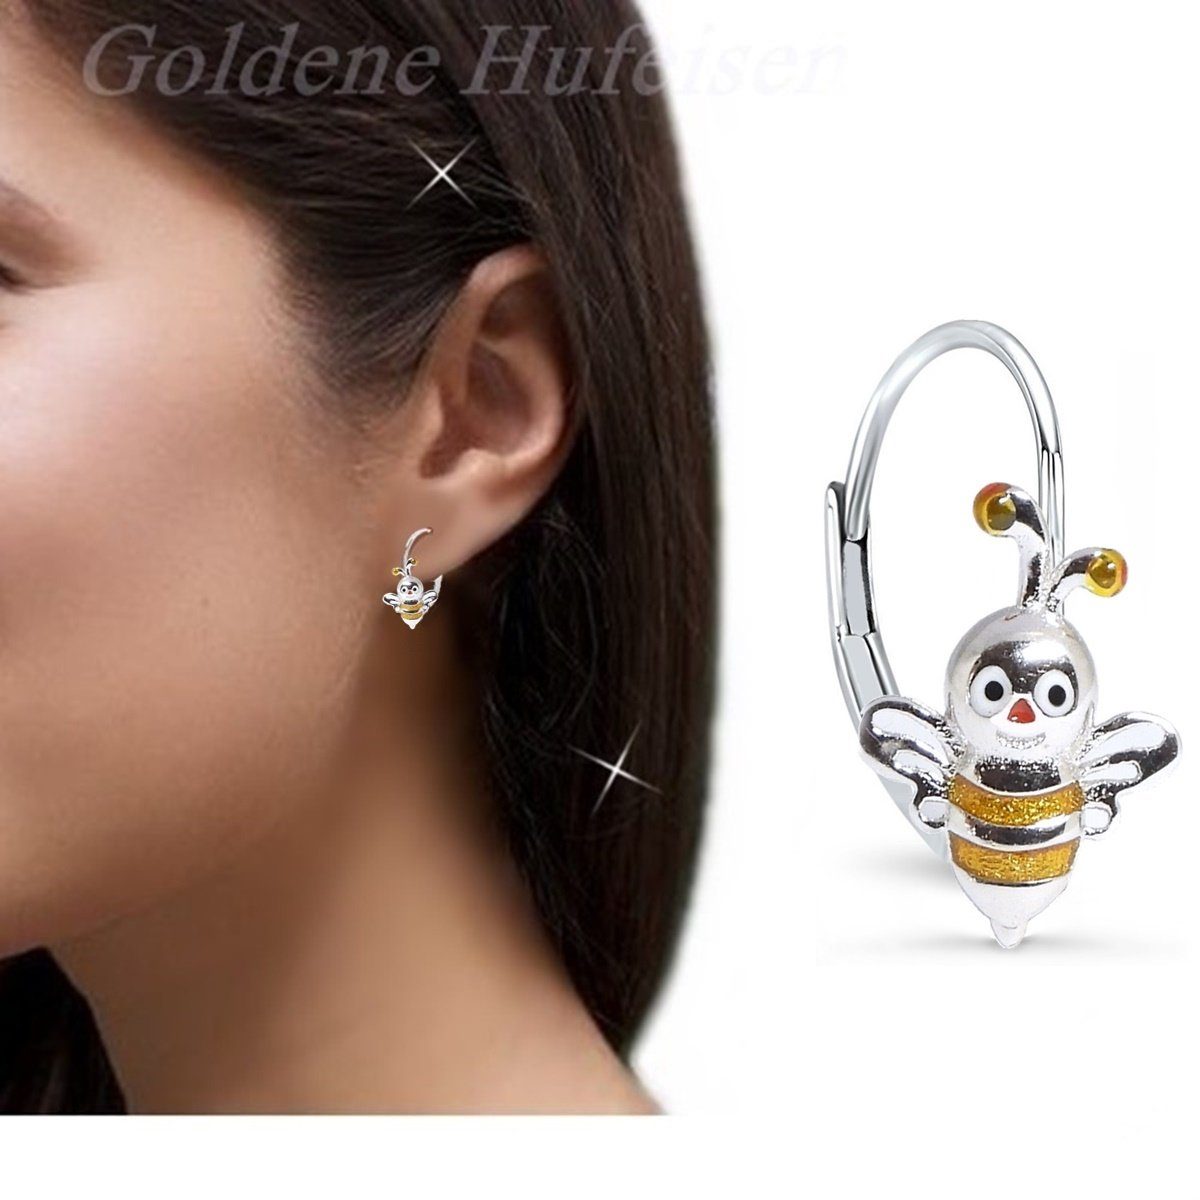 Biene Mädchen Sterling Kinderschmuck (Hängeohrringe, Brisur Hufeisen aus 925 Silber Kinder Ohrringe Etui), Ohrhänger inkl. Goldene Paar